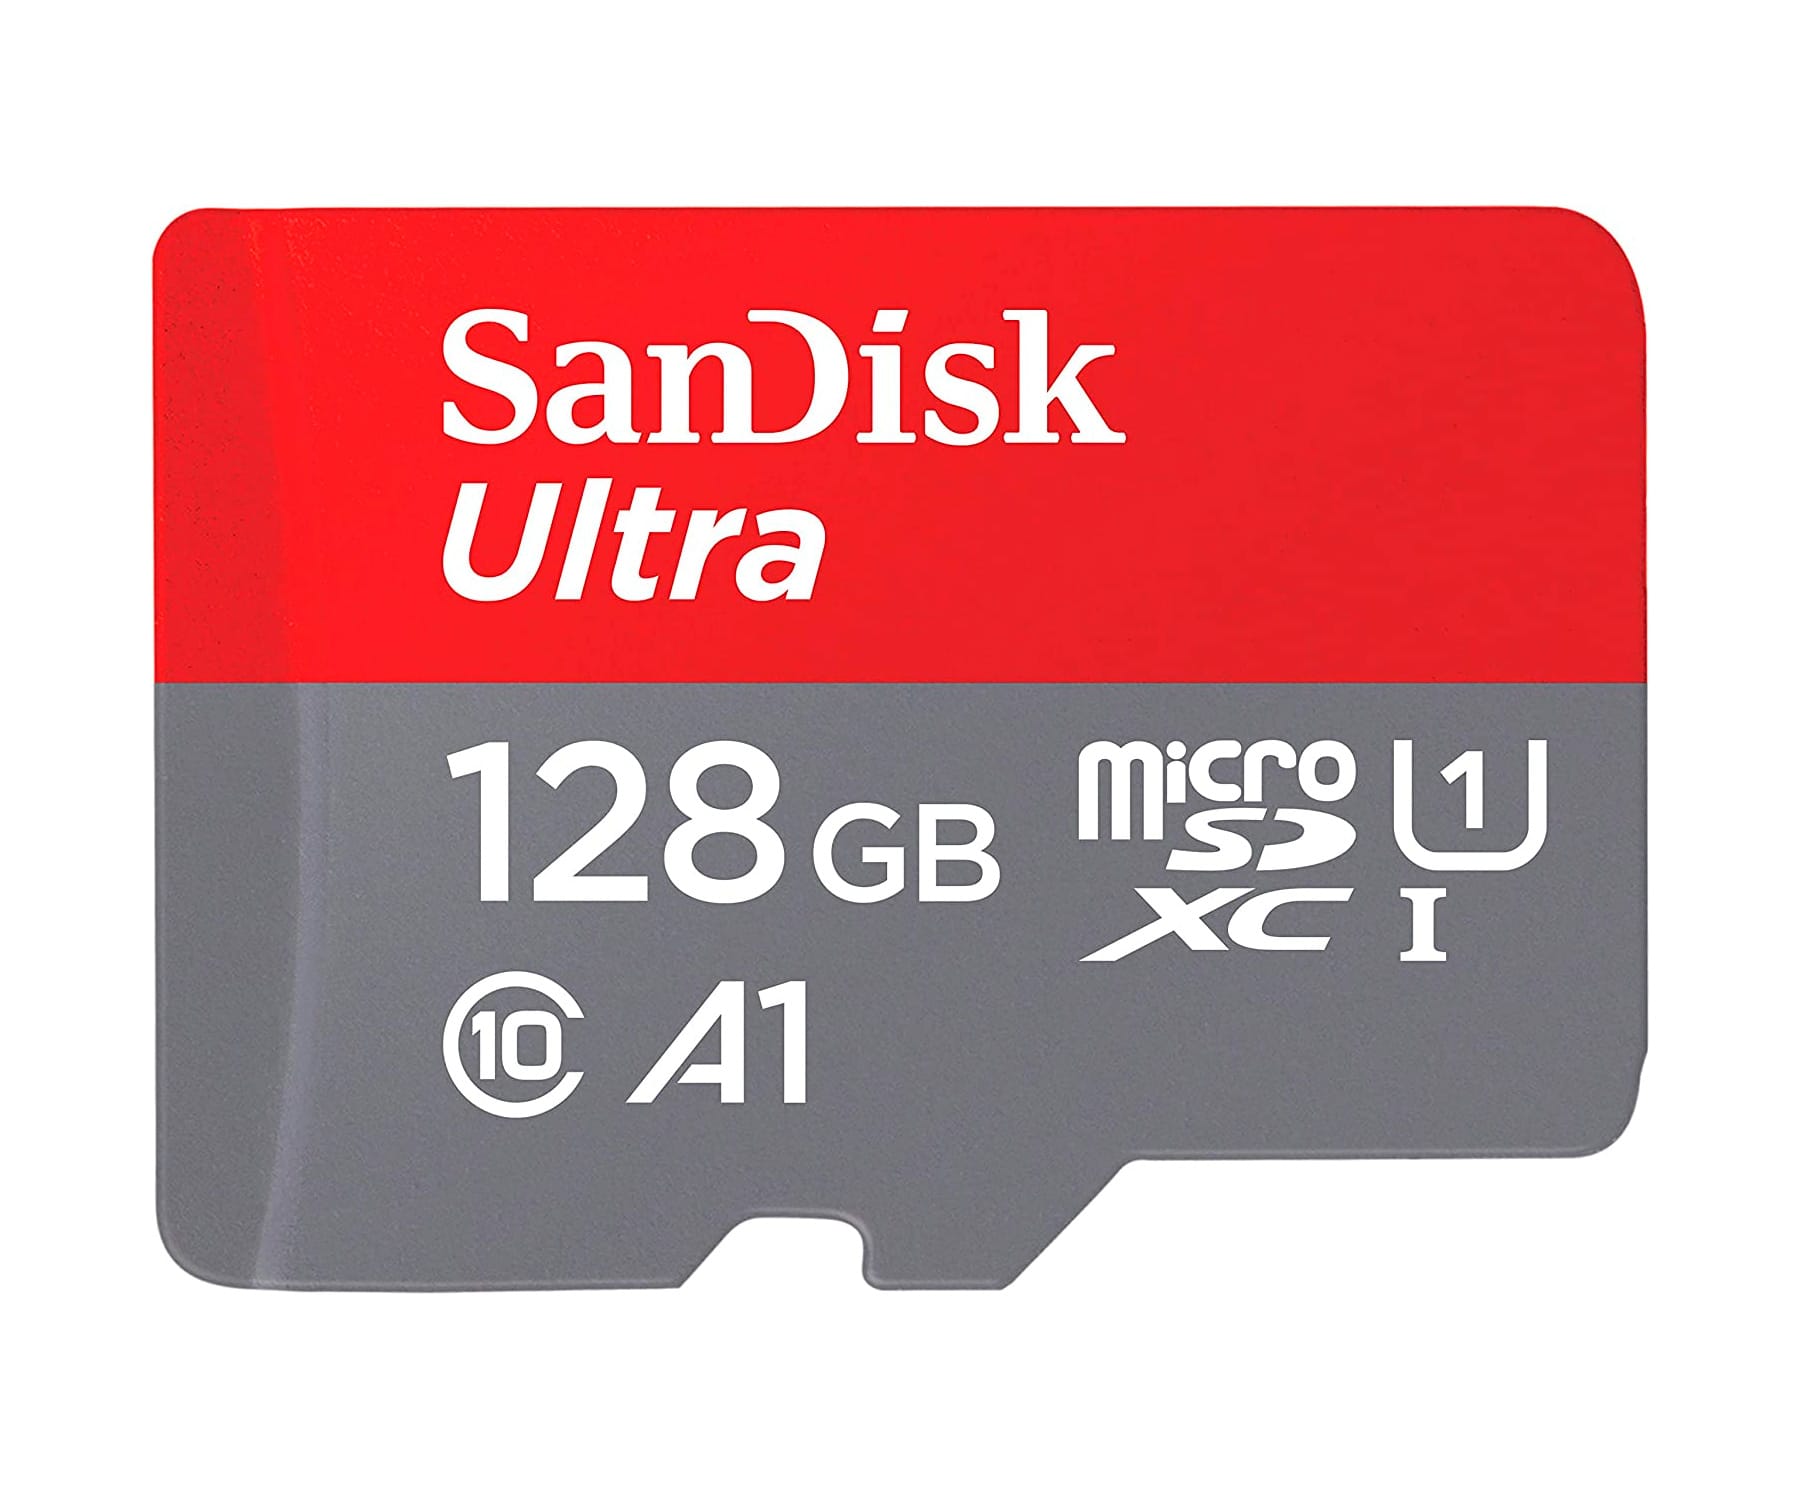 SANDISK TARJETA DE MEMORIA MICRO SDXC CLASE 10 UHSDE 128GB CON HASTA 120Mbps + ADAPTADOR SD